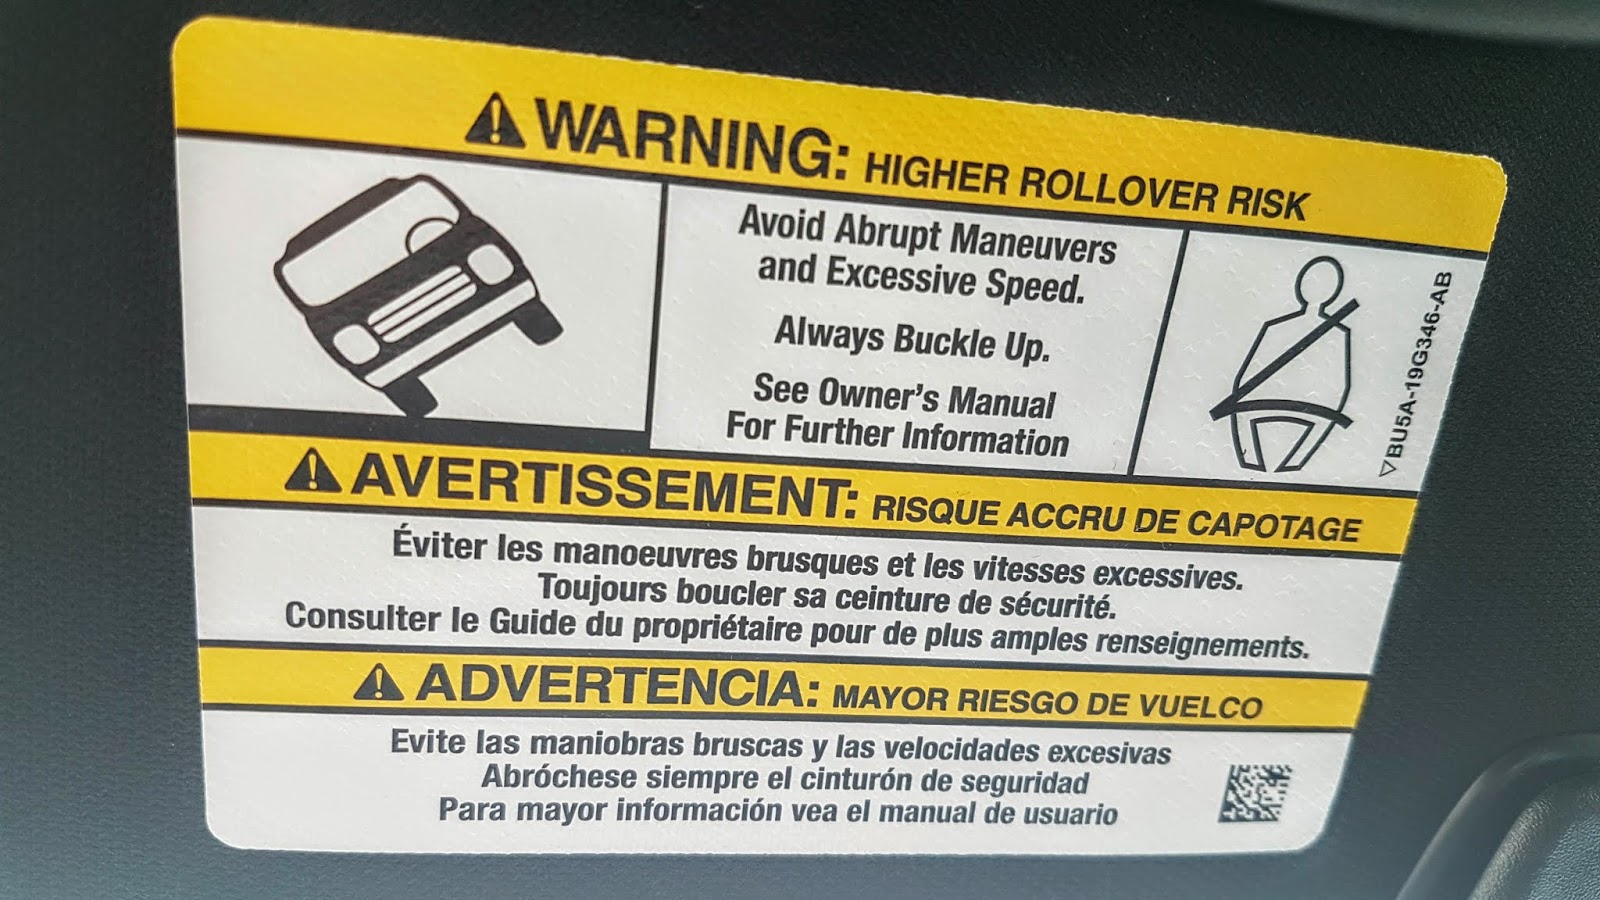 Higher rollover risk warning in SUV